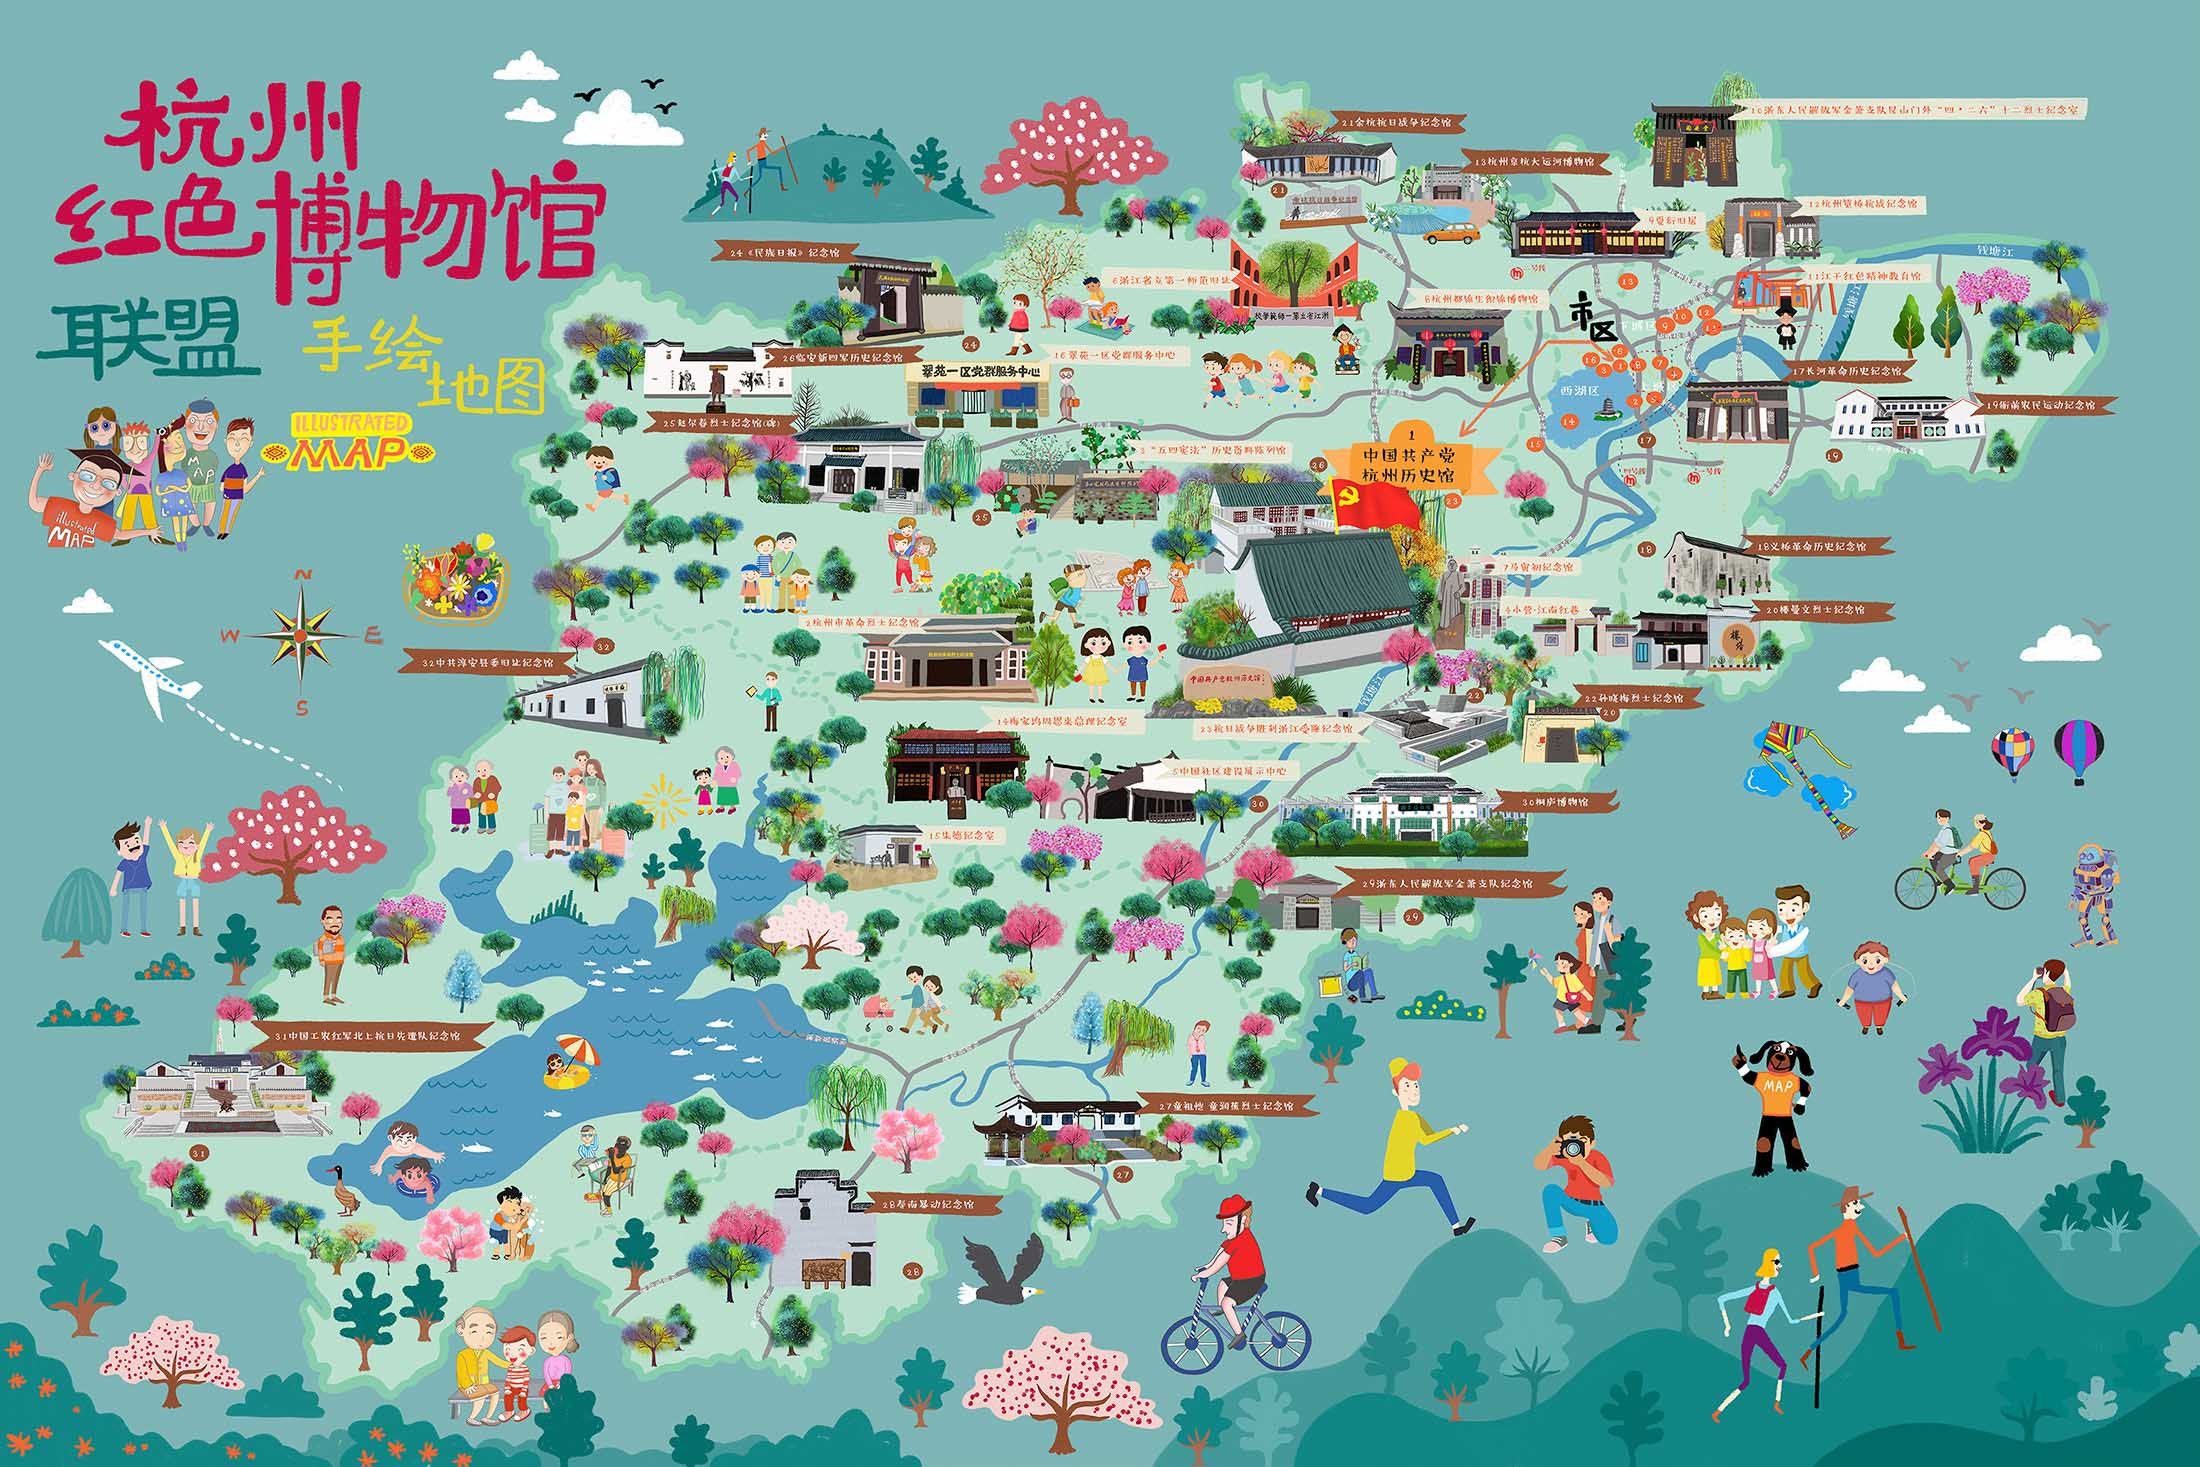 桦川手绘地图与科技的完美结合 